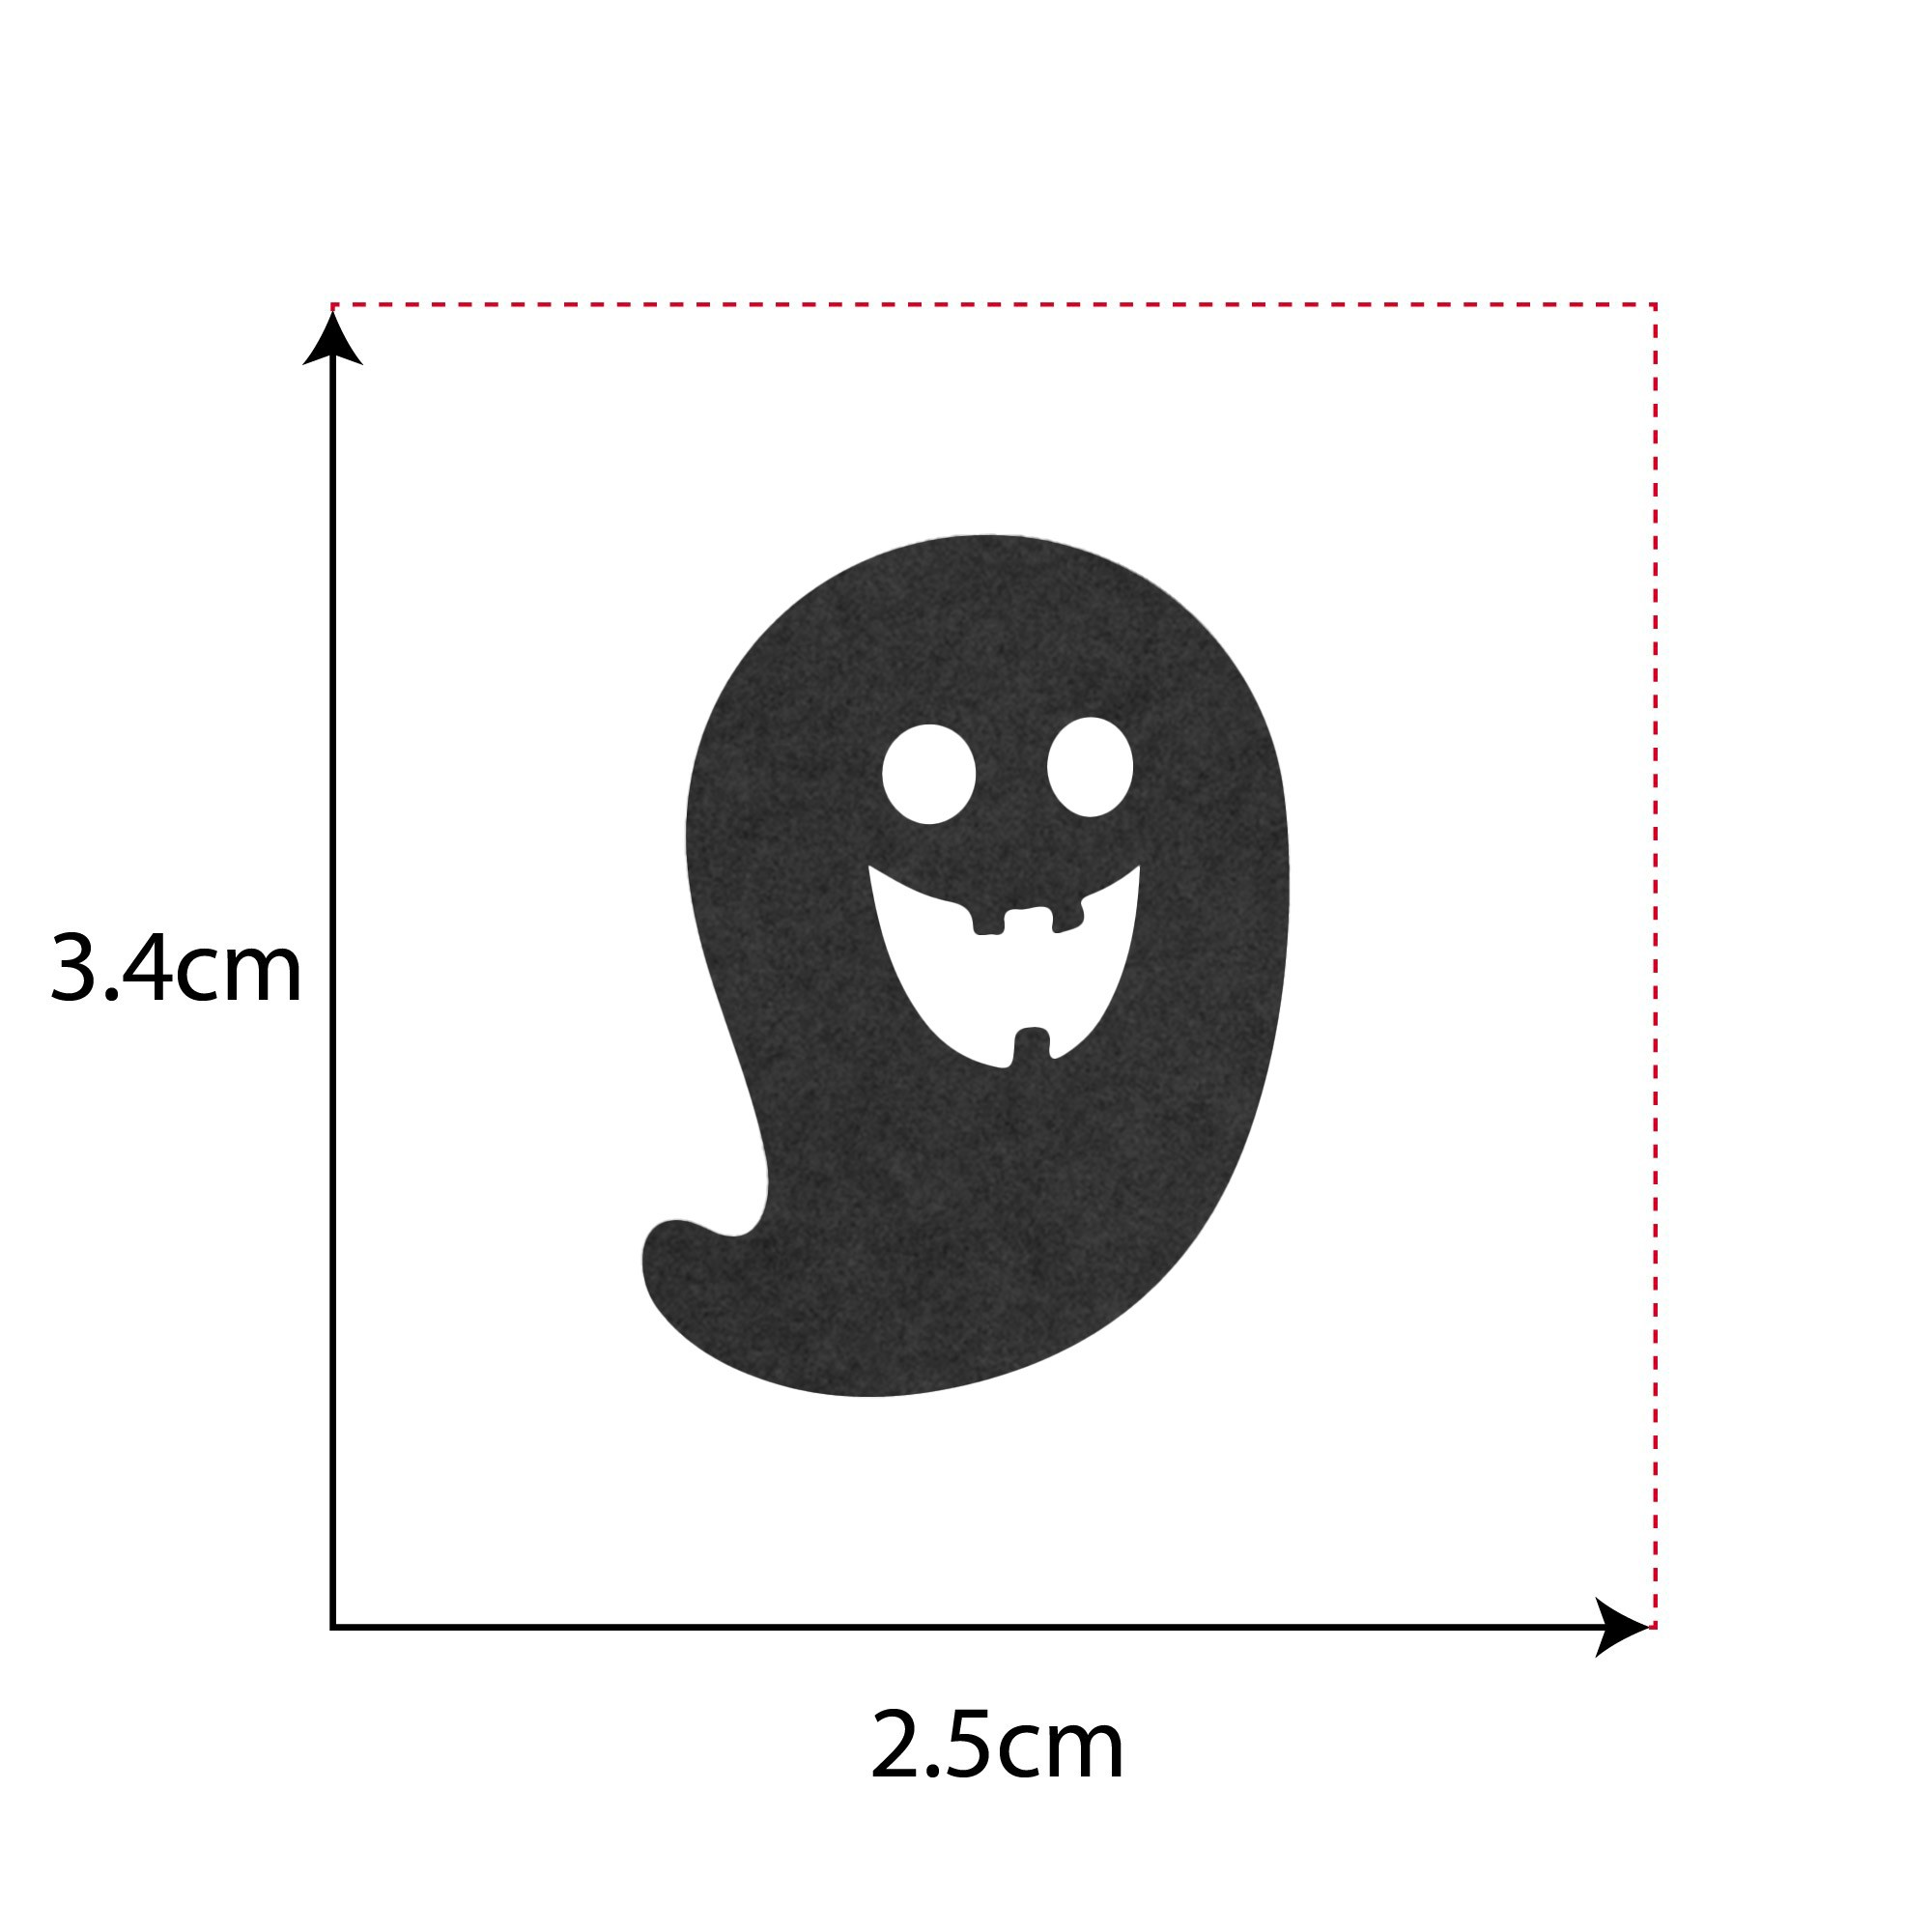 Fantasmino Halloween - Decorazione in feltro - 3,4 x 2,5 cm - Confezione da 5 pezzi